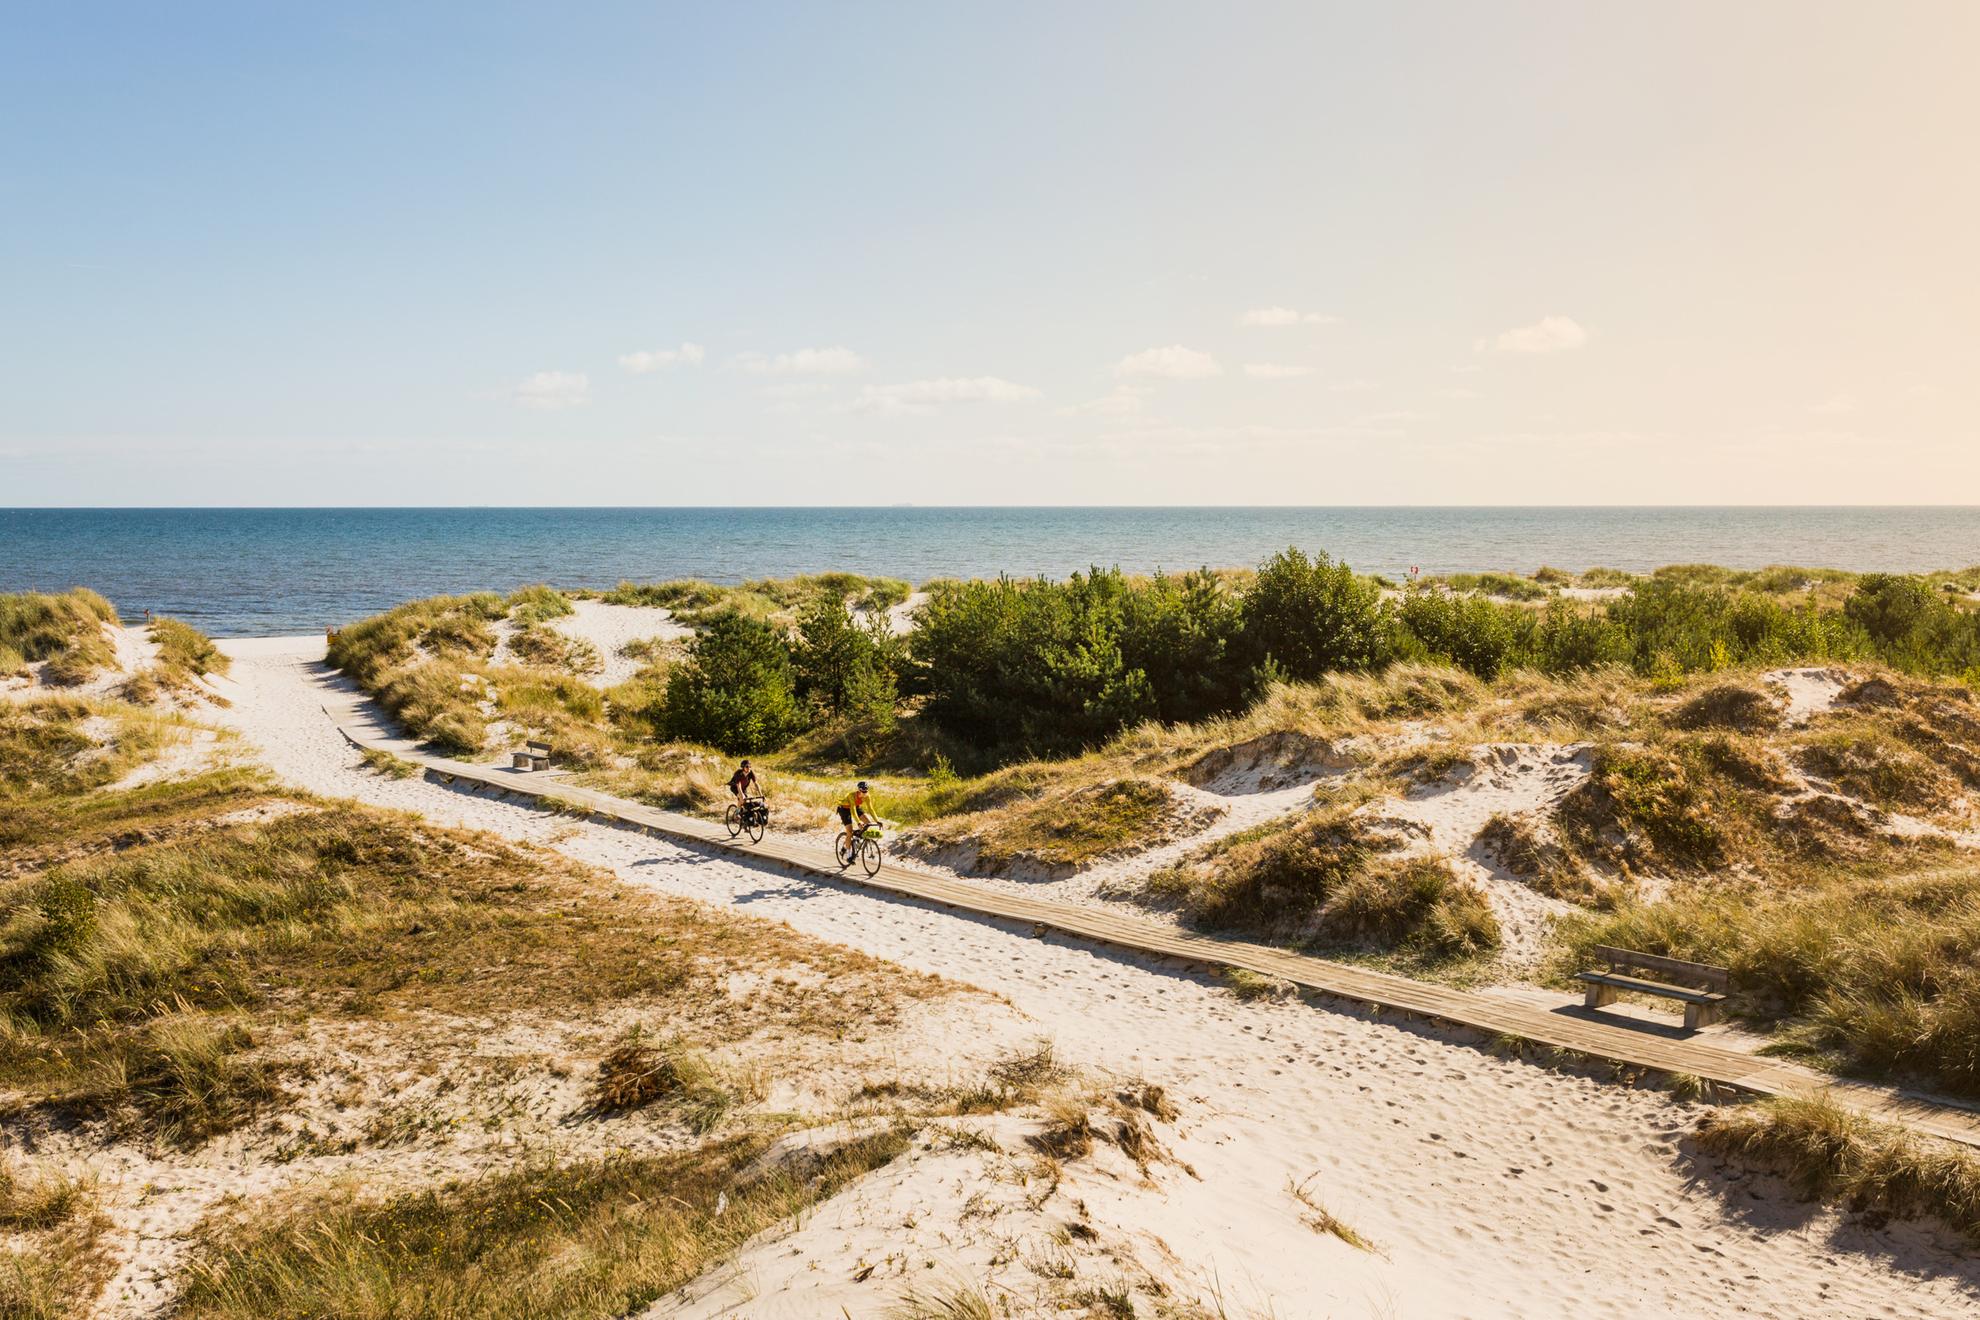 Deux personnes font du vélo sur une passerelle en bois sur une plage de sable entourée de touffes d'herbe.